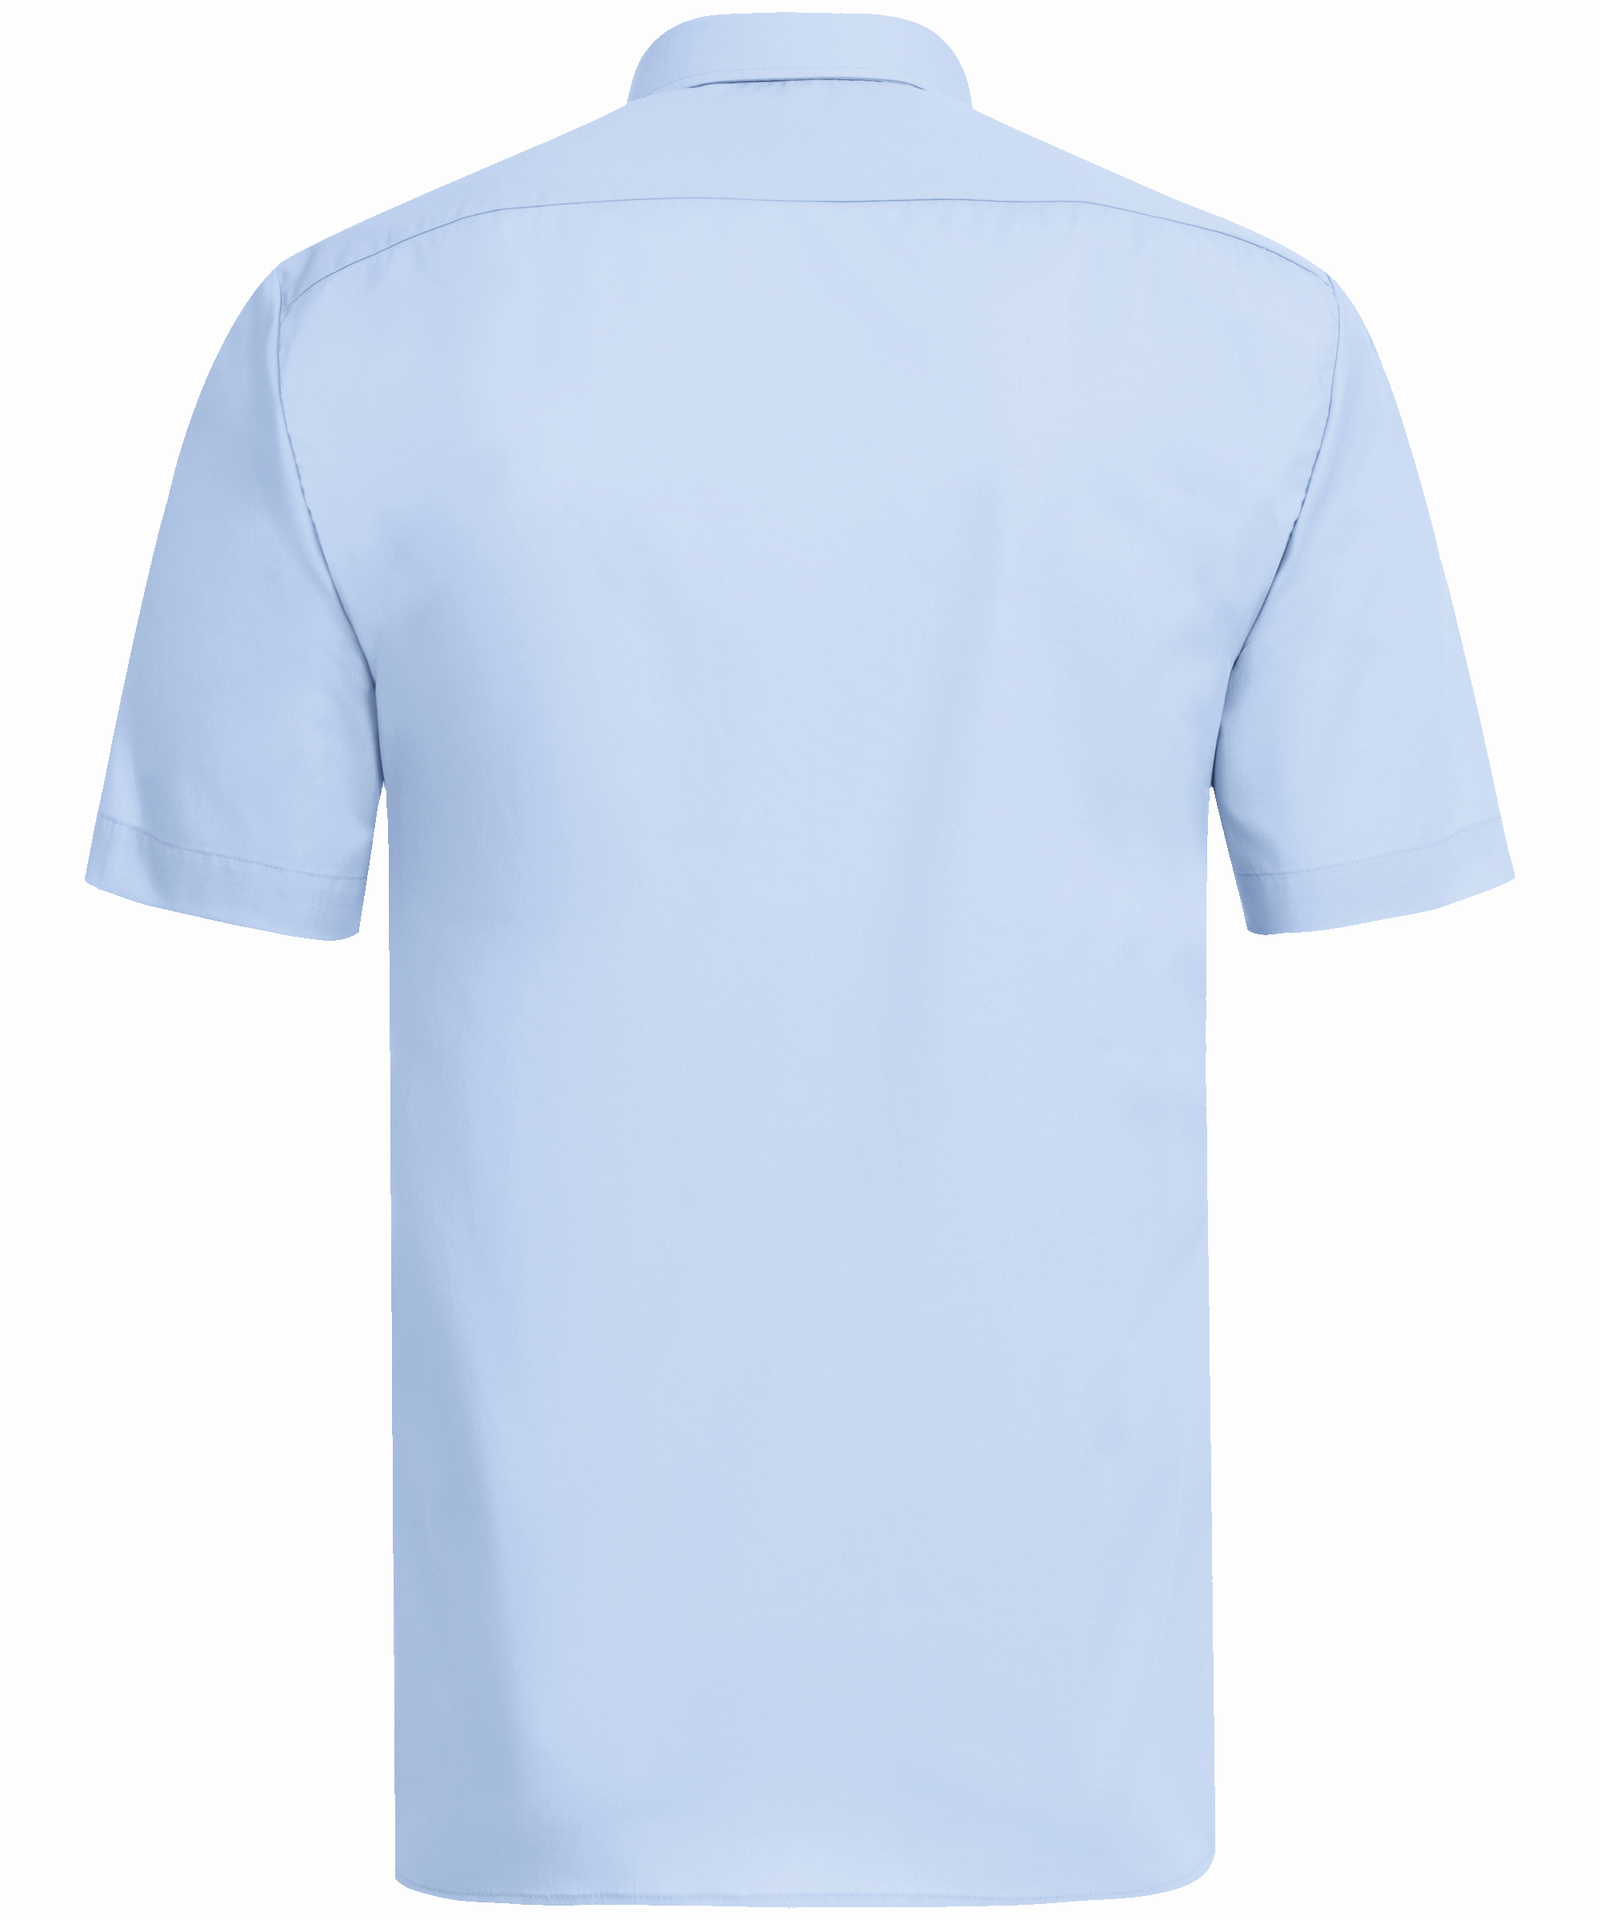 SERVICE Hemden Herren Hemd Regular Fit bleu 